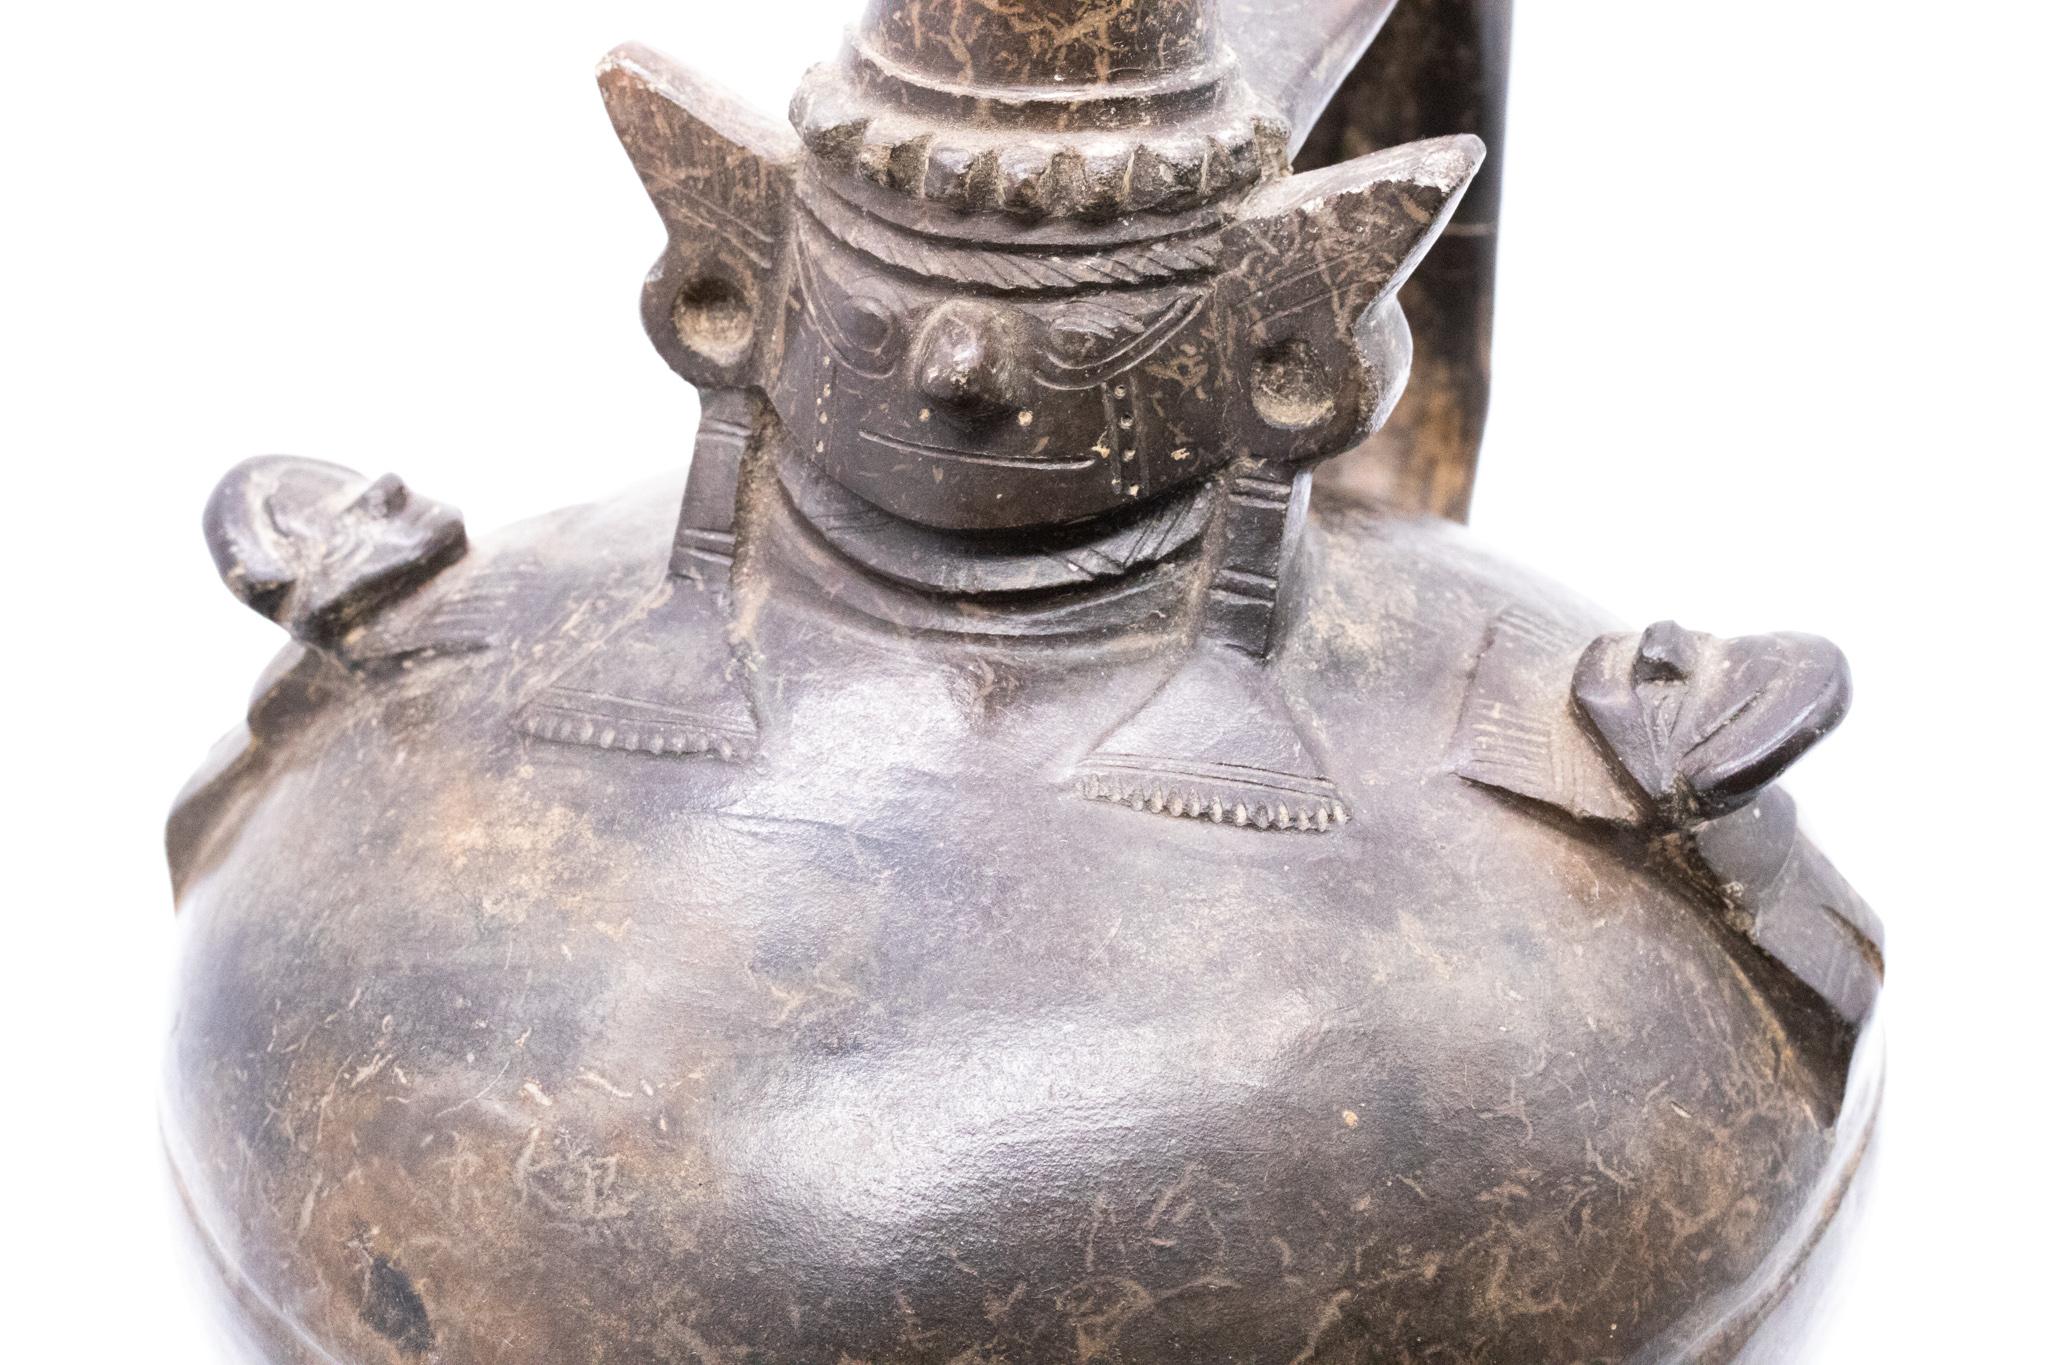 Vase huaco préhispanique Inca Pérou en céramique noire, provenant de Lambayeque.

Très belle pièce, créée sous la culture Inca entre les années 750 / 1375 ADS aux cultures Sican/Lambayeque/Chimu. Ce récipient huaco a été soigneusement modelé en